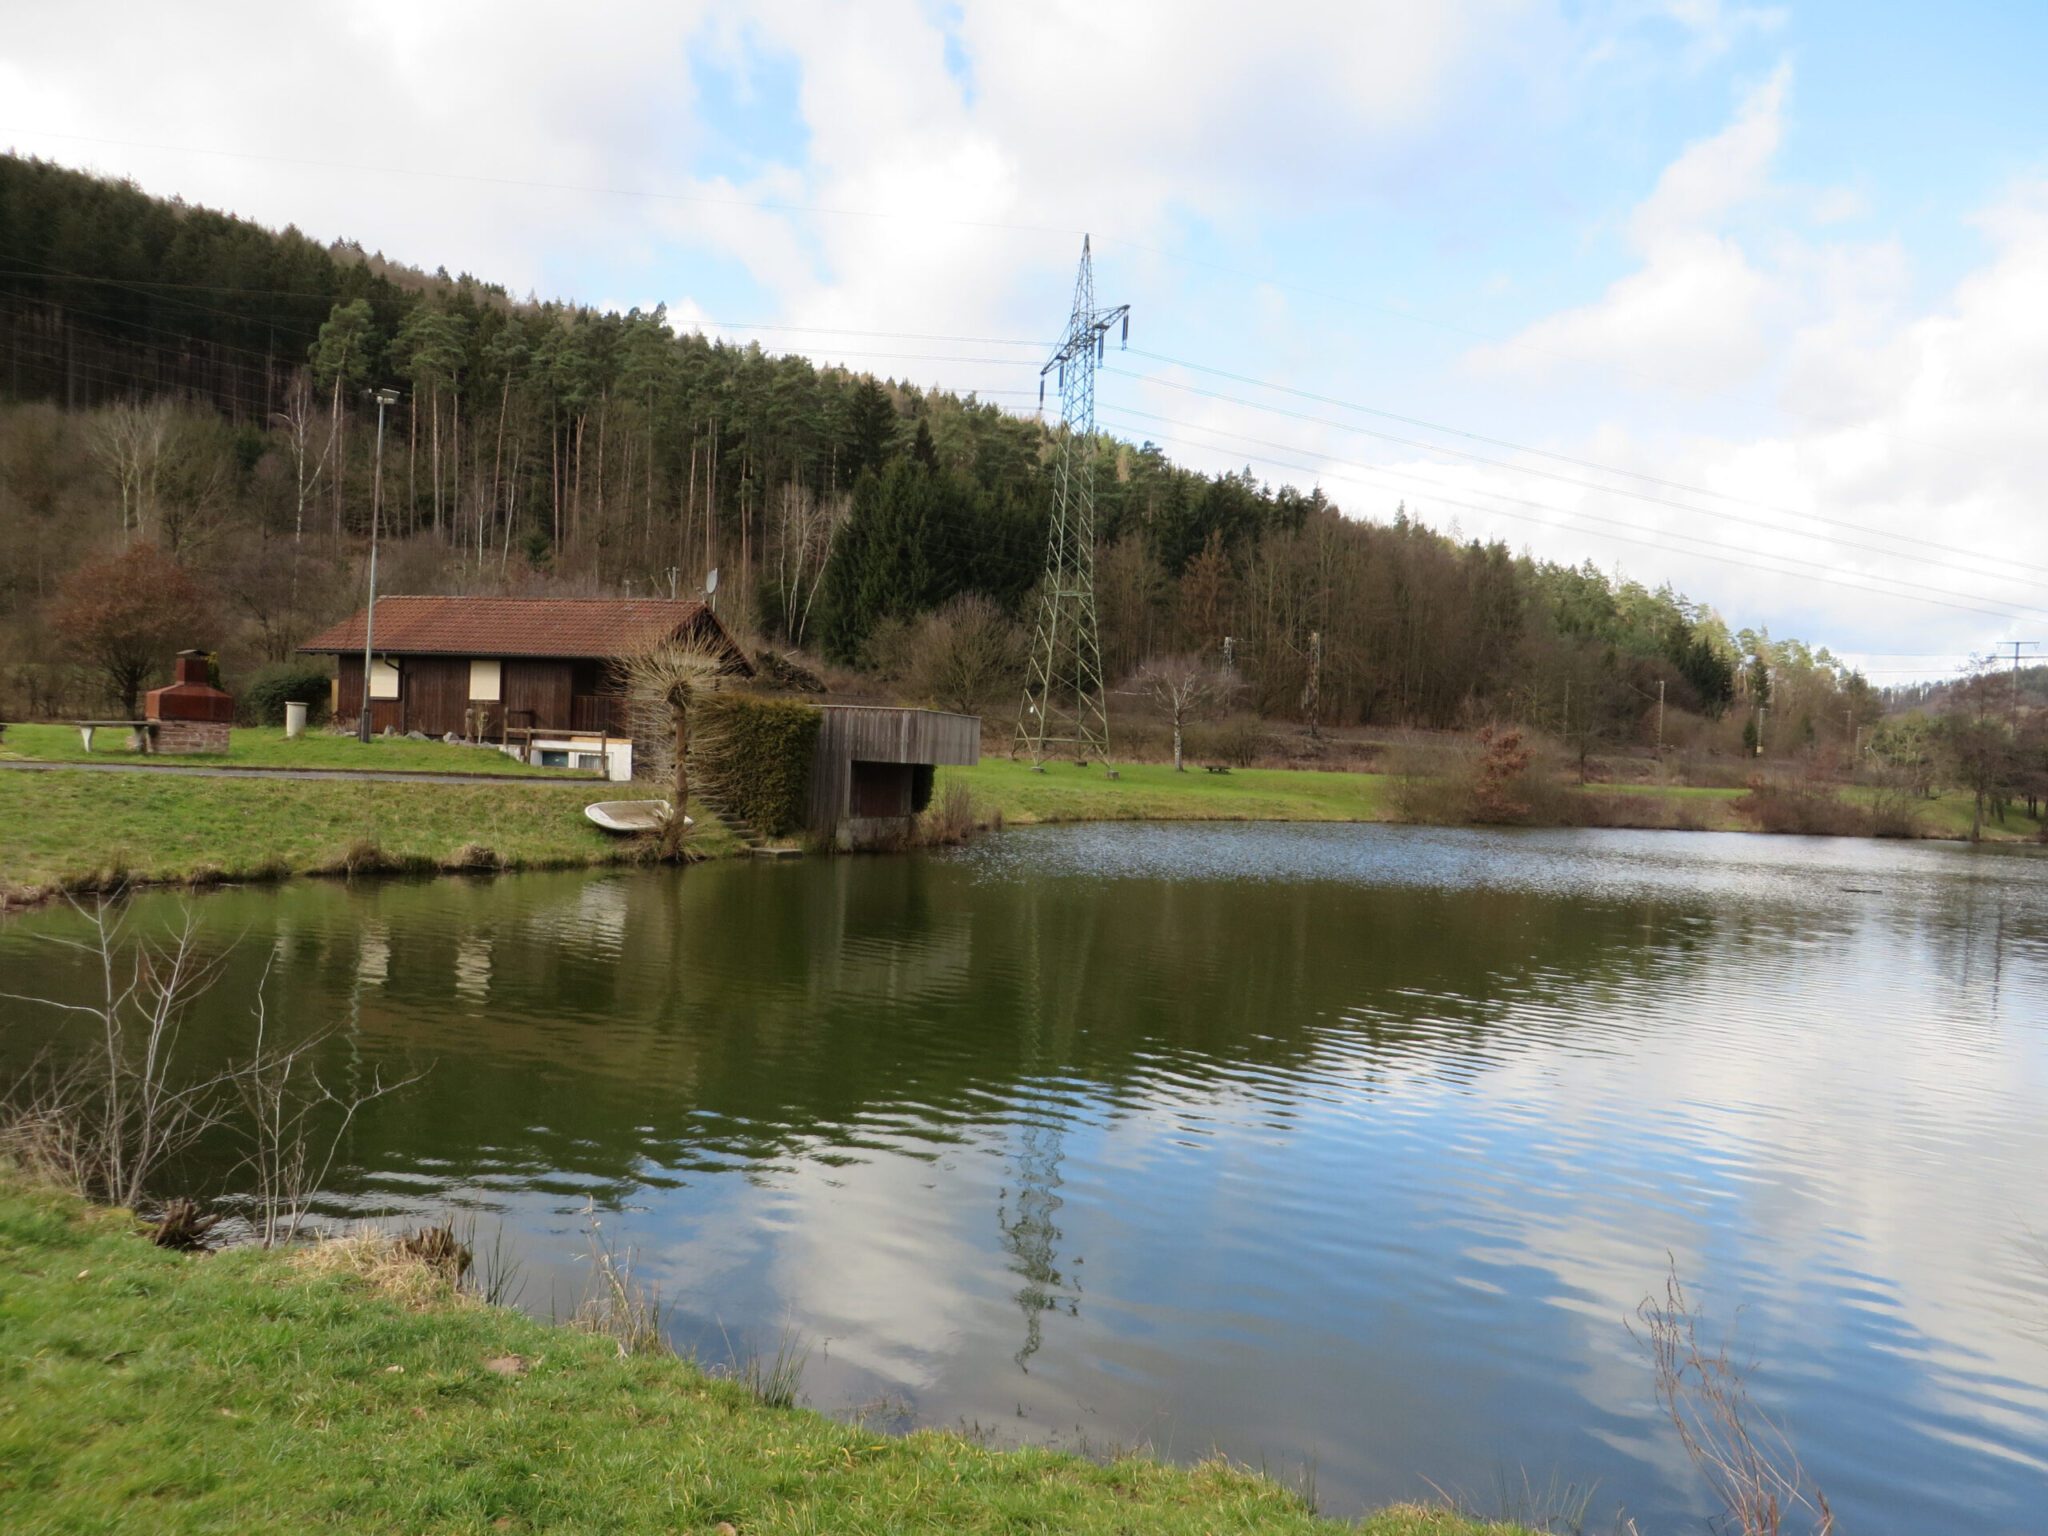 Angelsportverein Gemünden - Gemeinschaft für Angelfreunde und Naturliebhaber